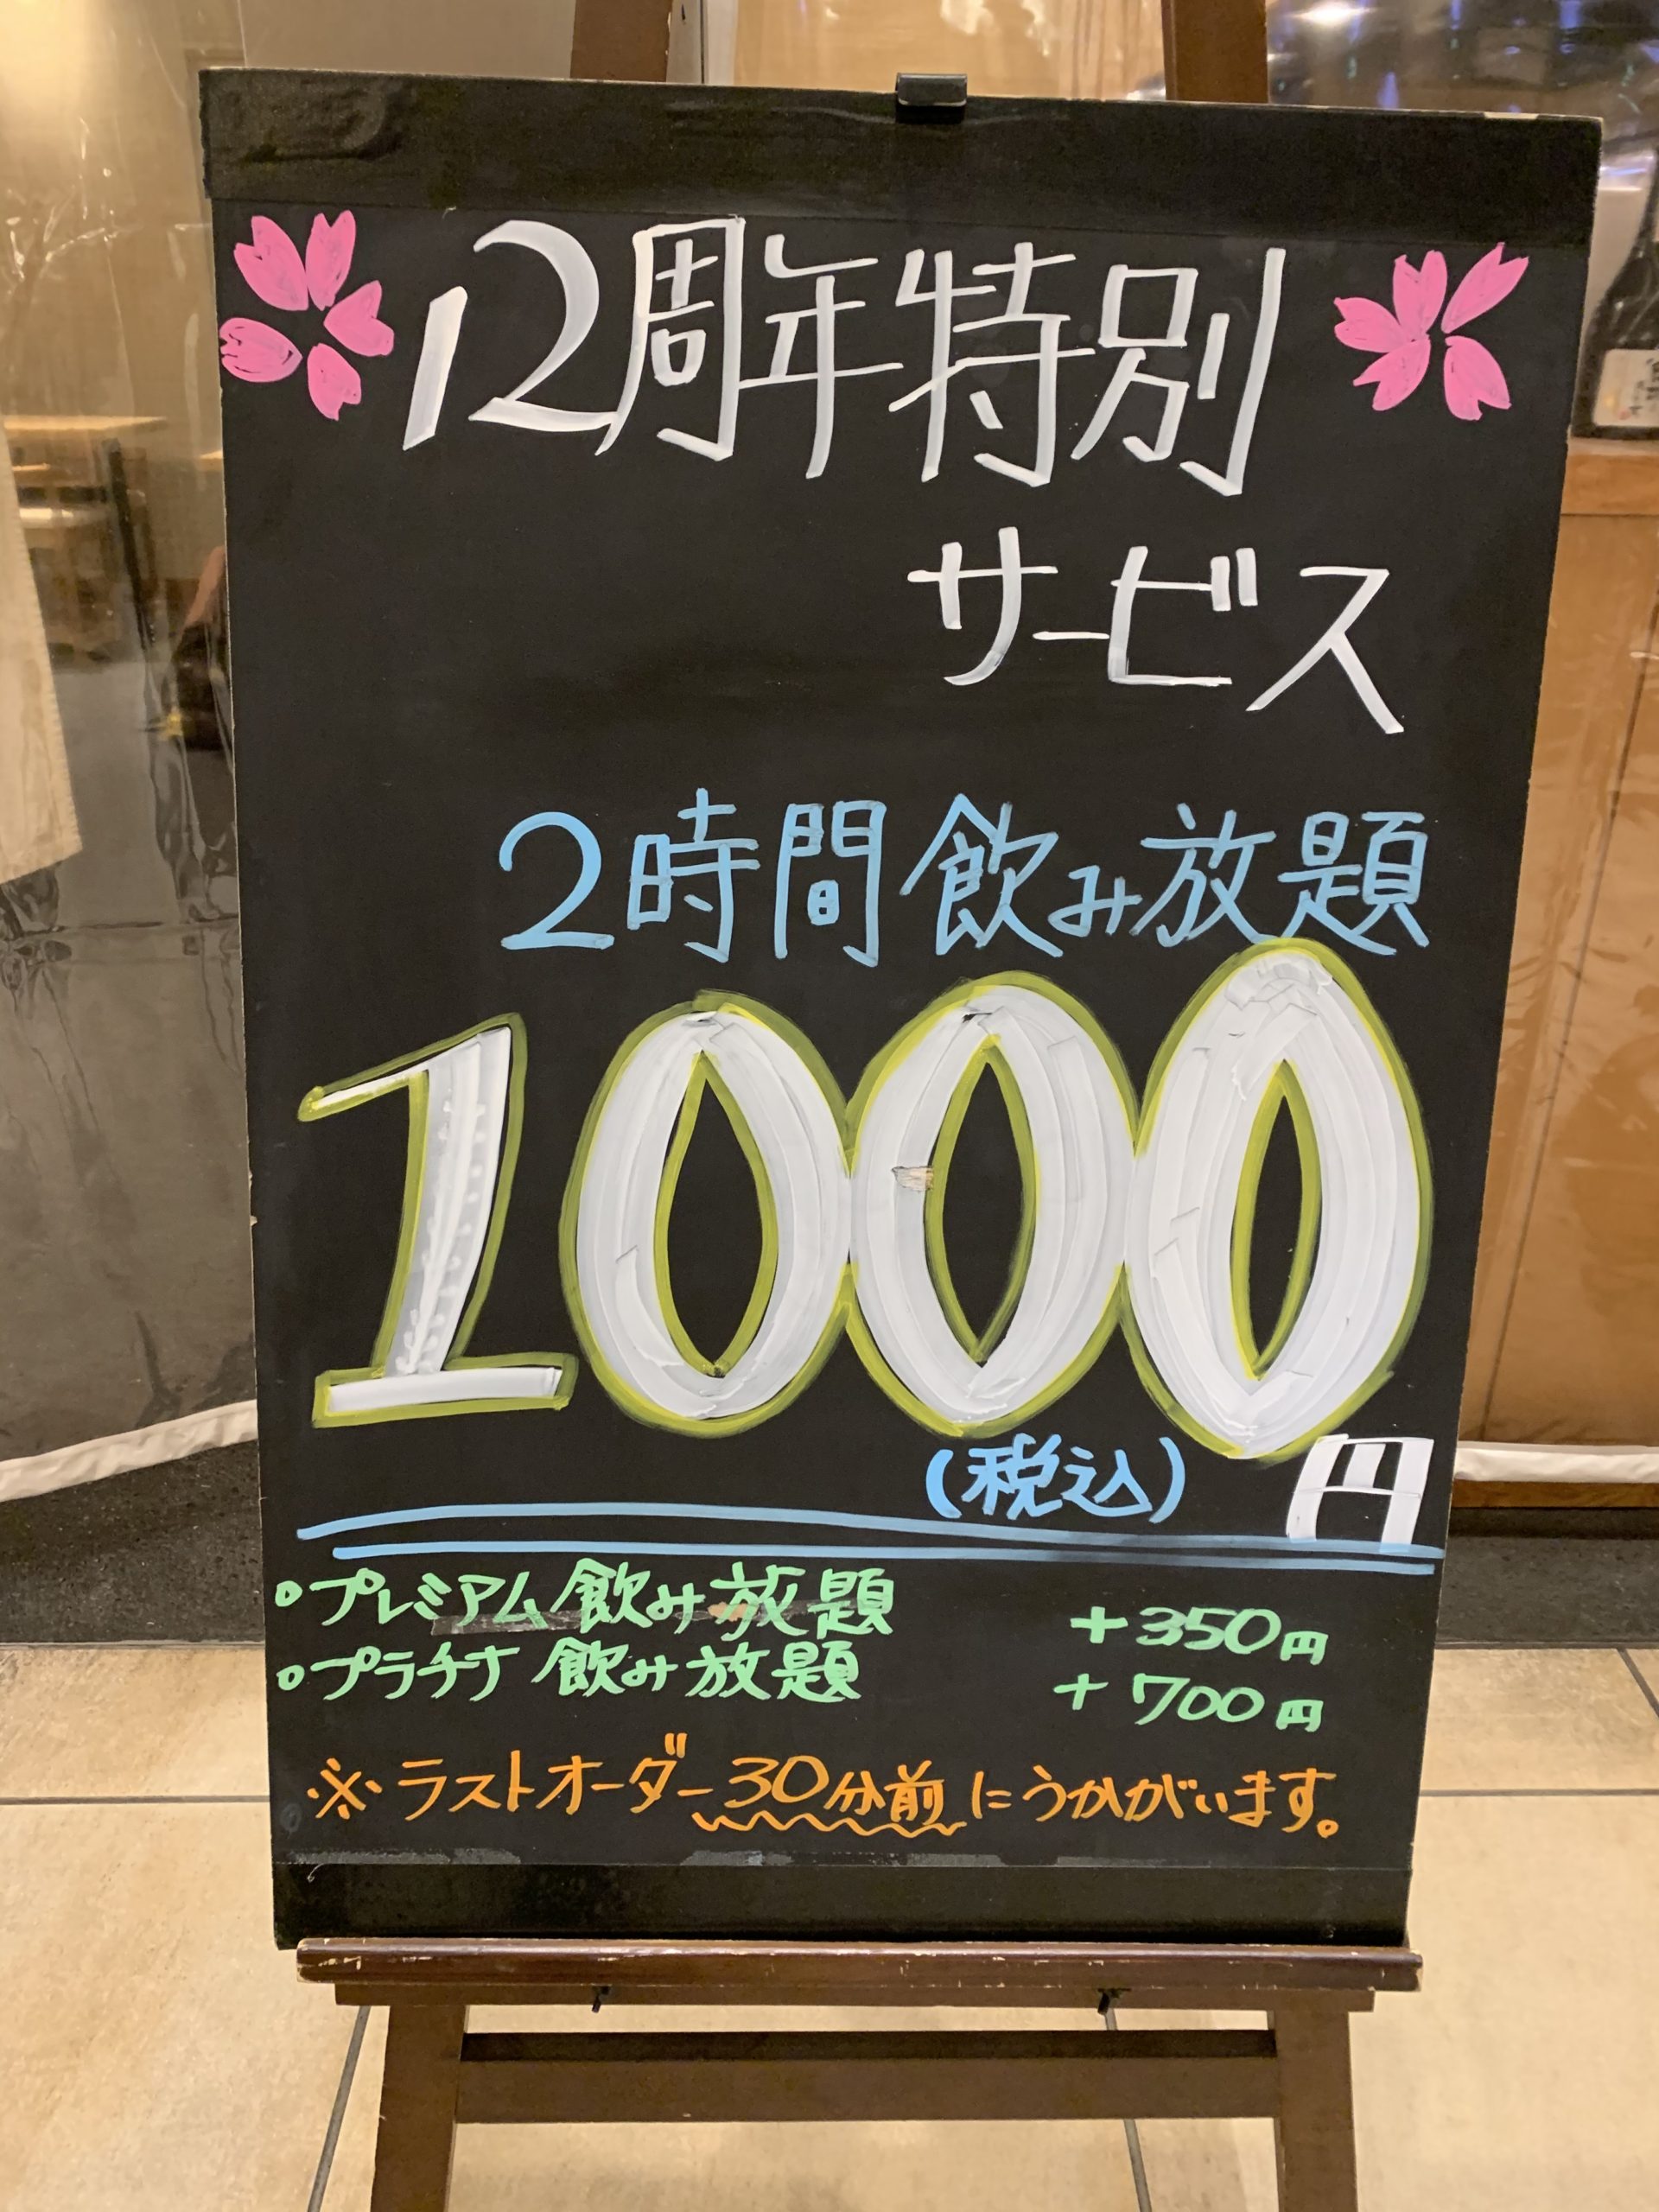 DOZO12周年特別サービス「飲み放題2時間1,000円(税込)」